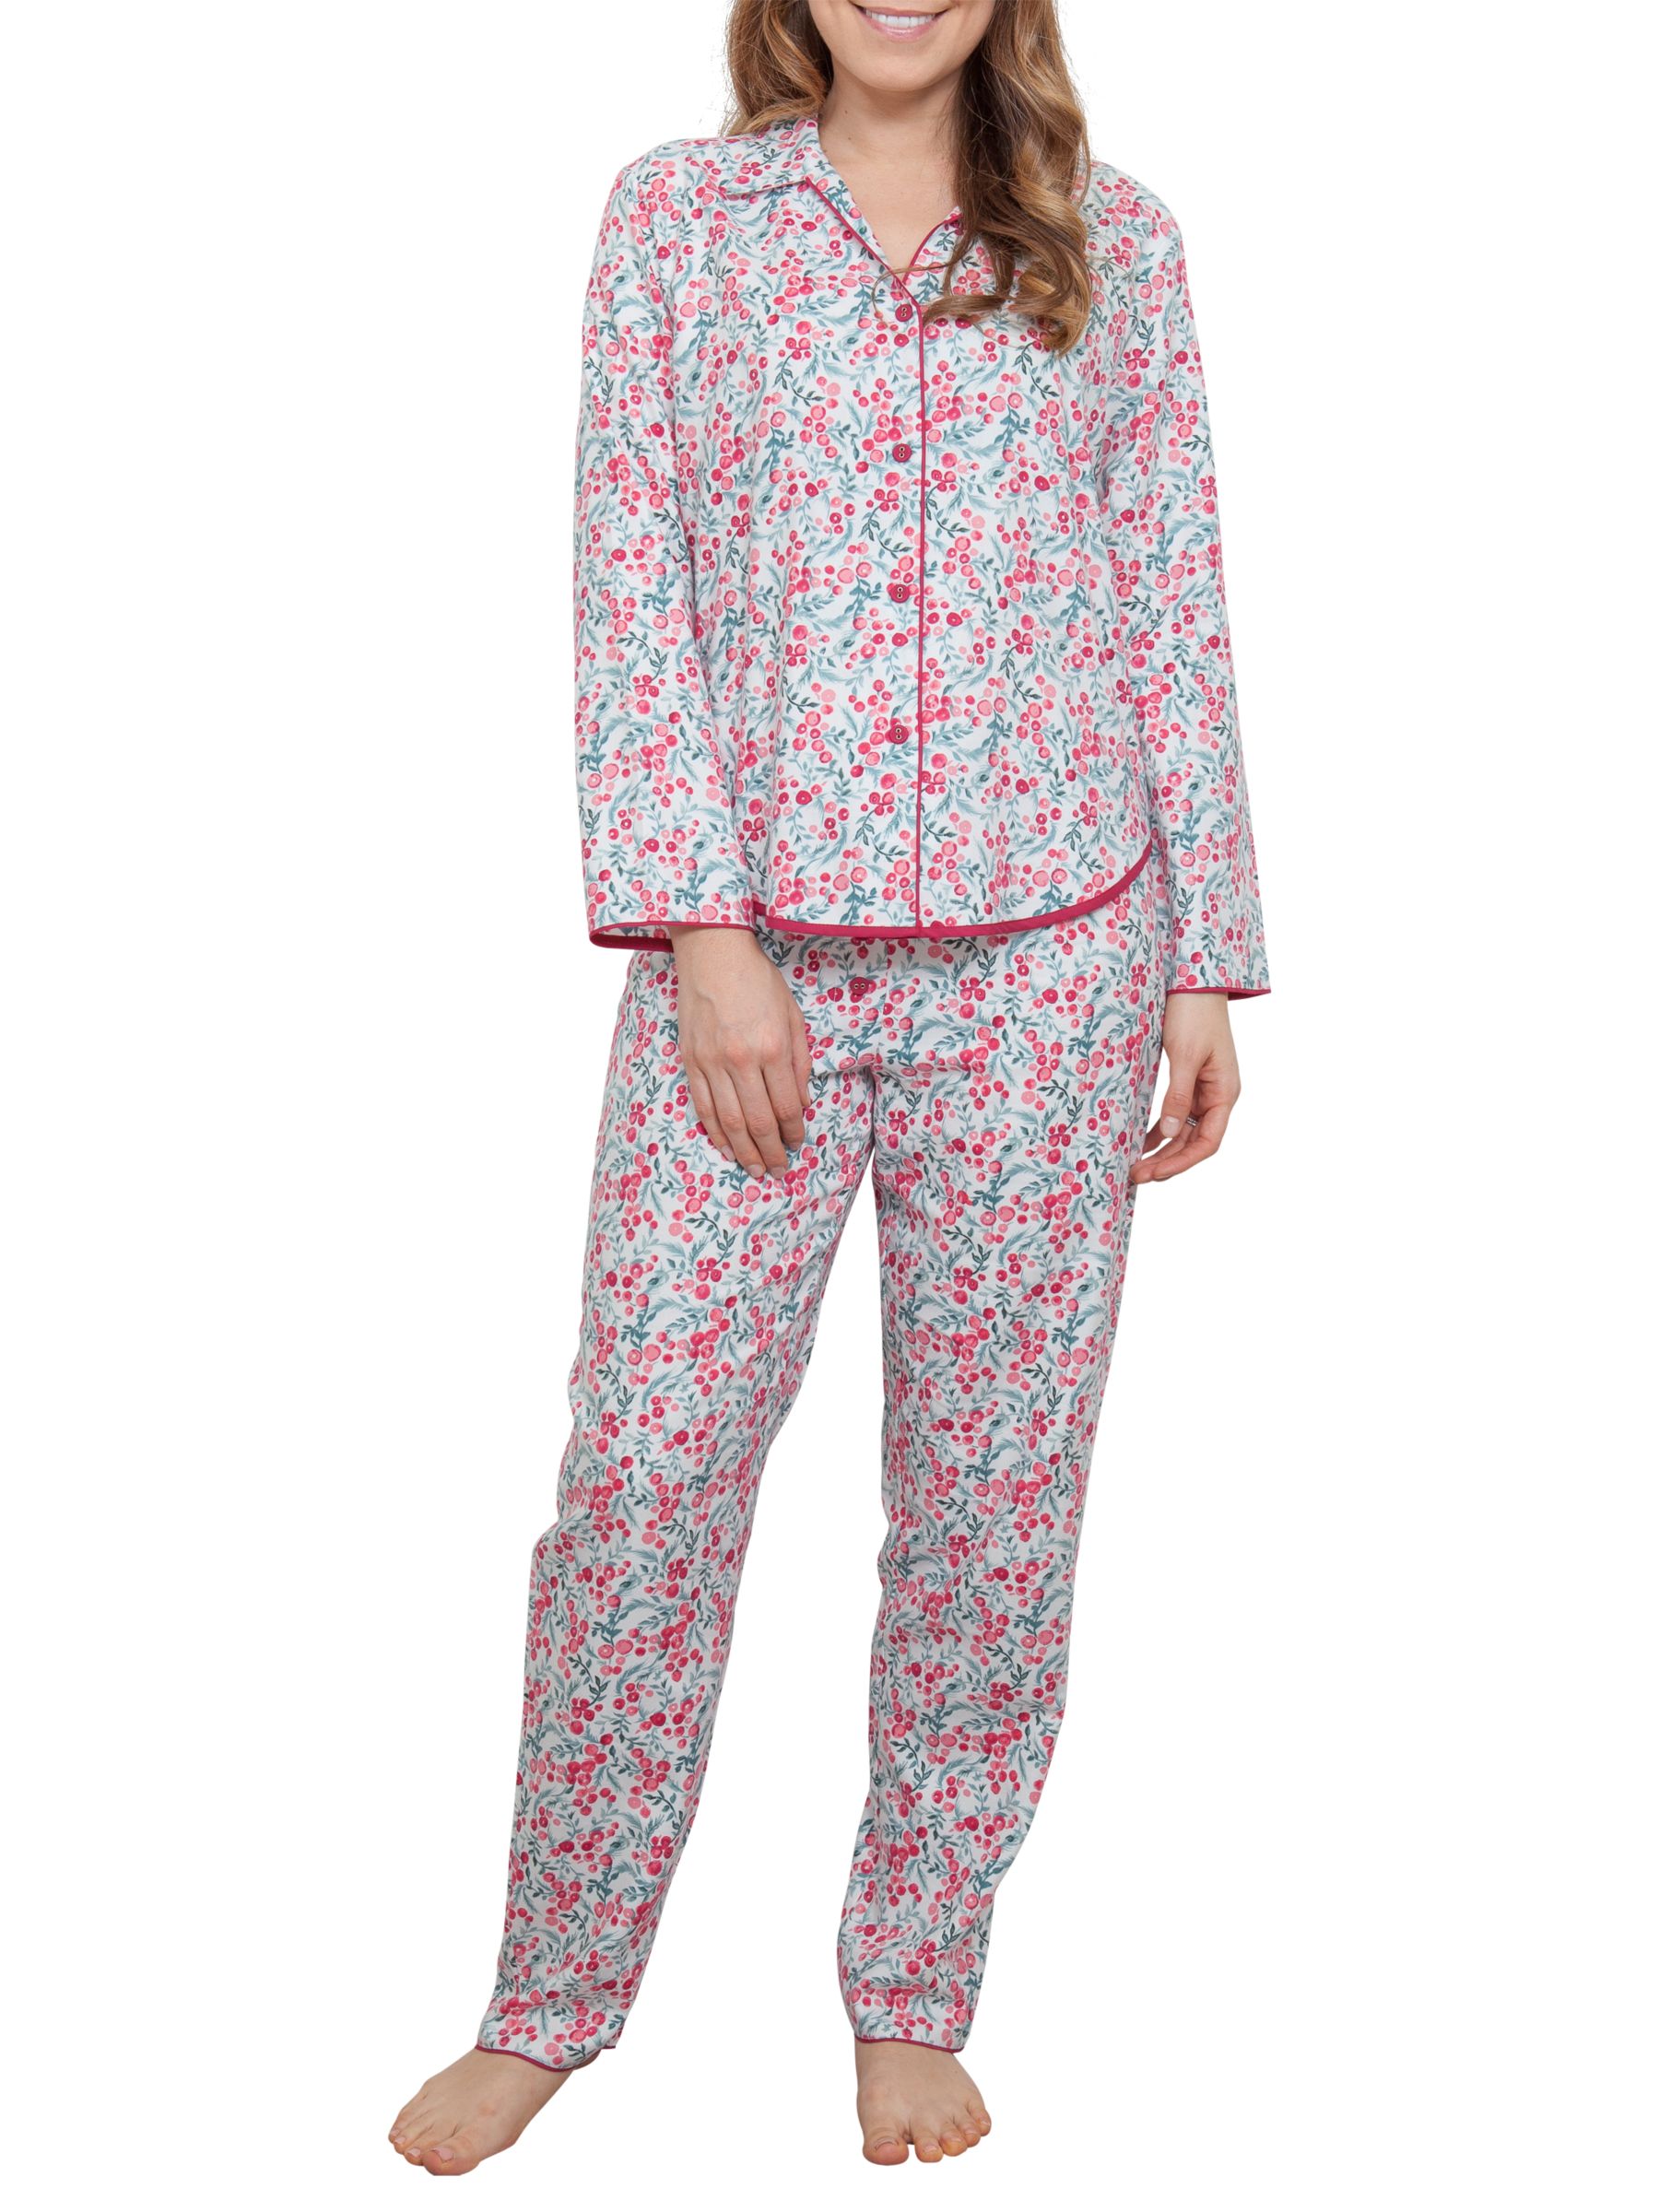 Cyberjammies Holly Berry Pyjama Set, Red/Multi at John Lewis & Partners